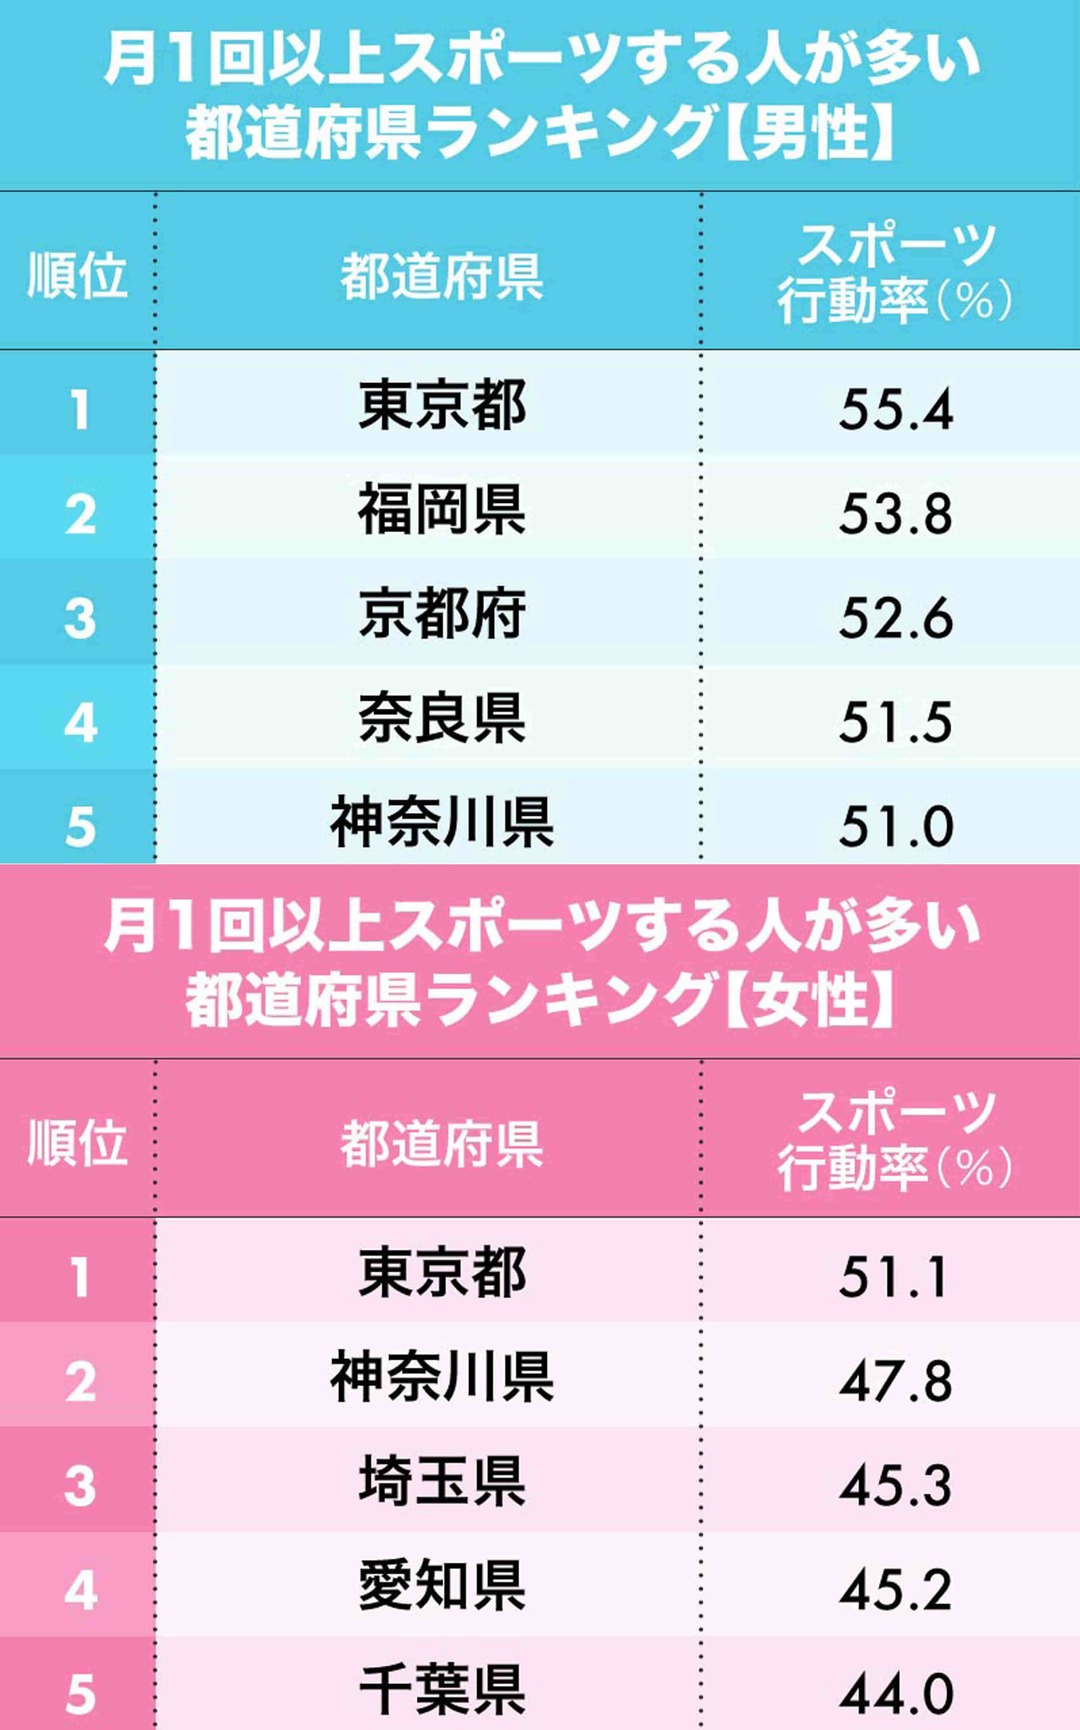 スポーツする人が多い都道府県ランキング（1-5位）